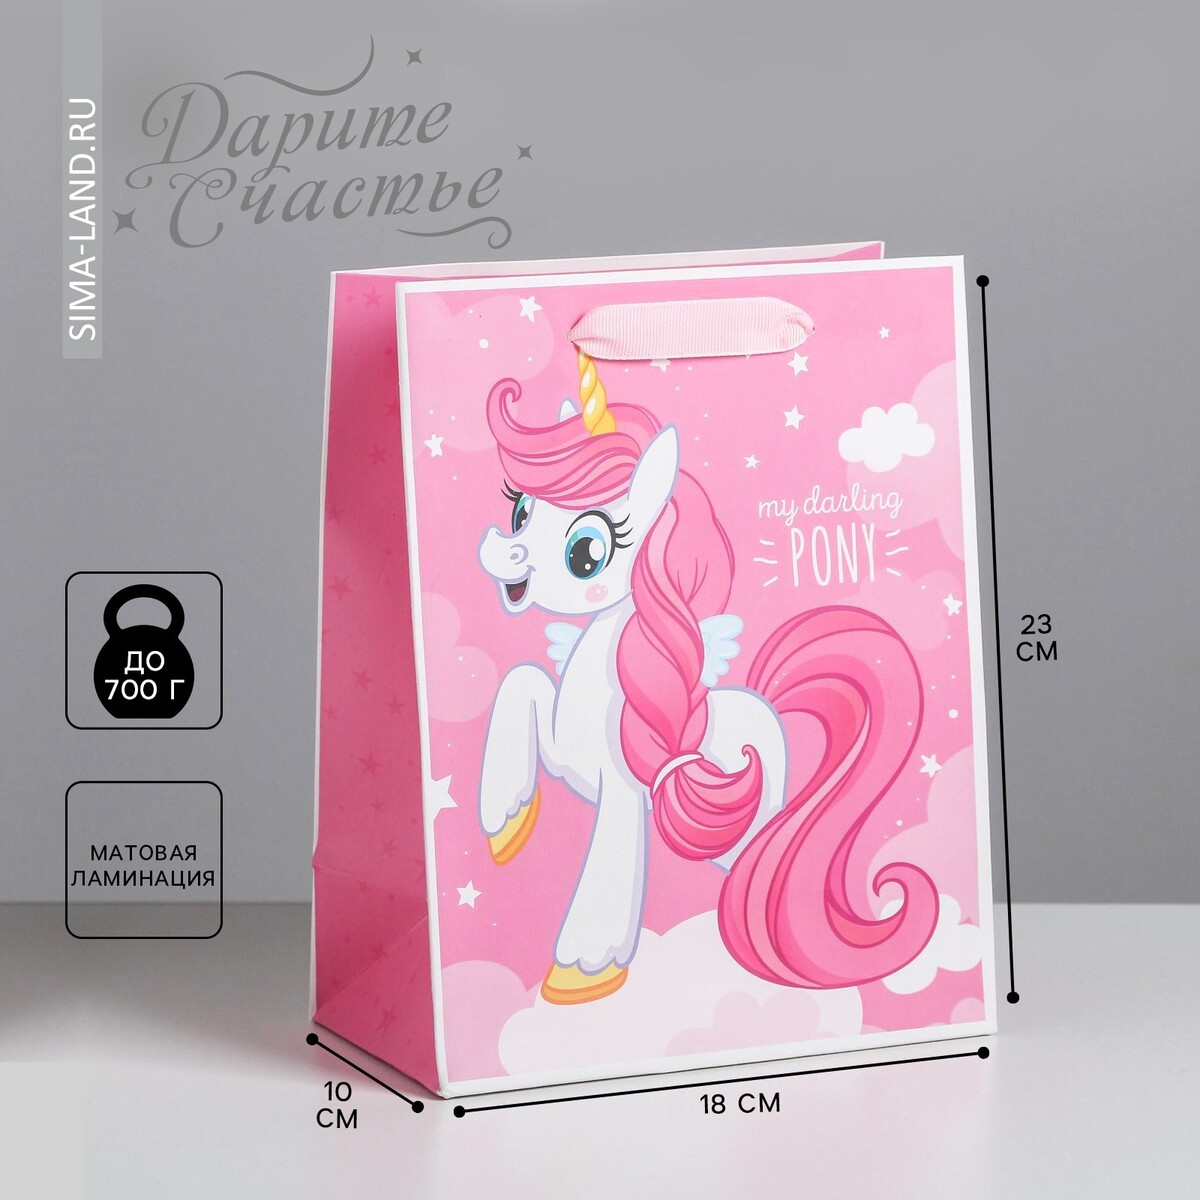 Пакет подарочный ламинированный вертикальный, упаковка, my darling pony, ms 18 х 23 х 10 см пакет ламинированный вертикальный my darling pony ms 18 × 23 × 10 см